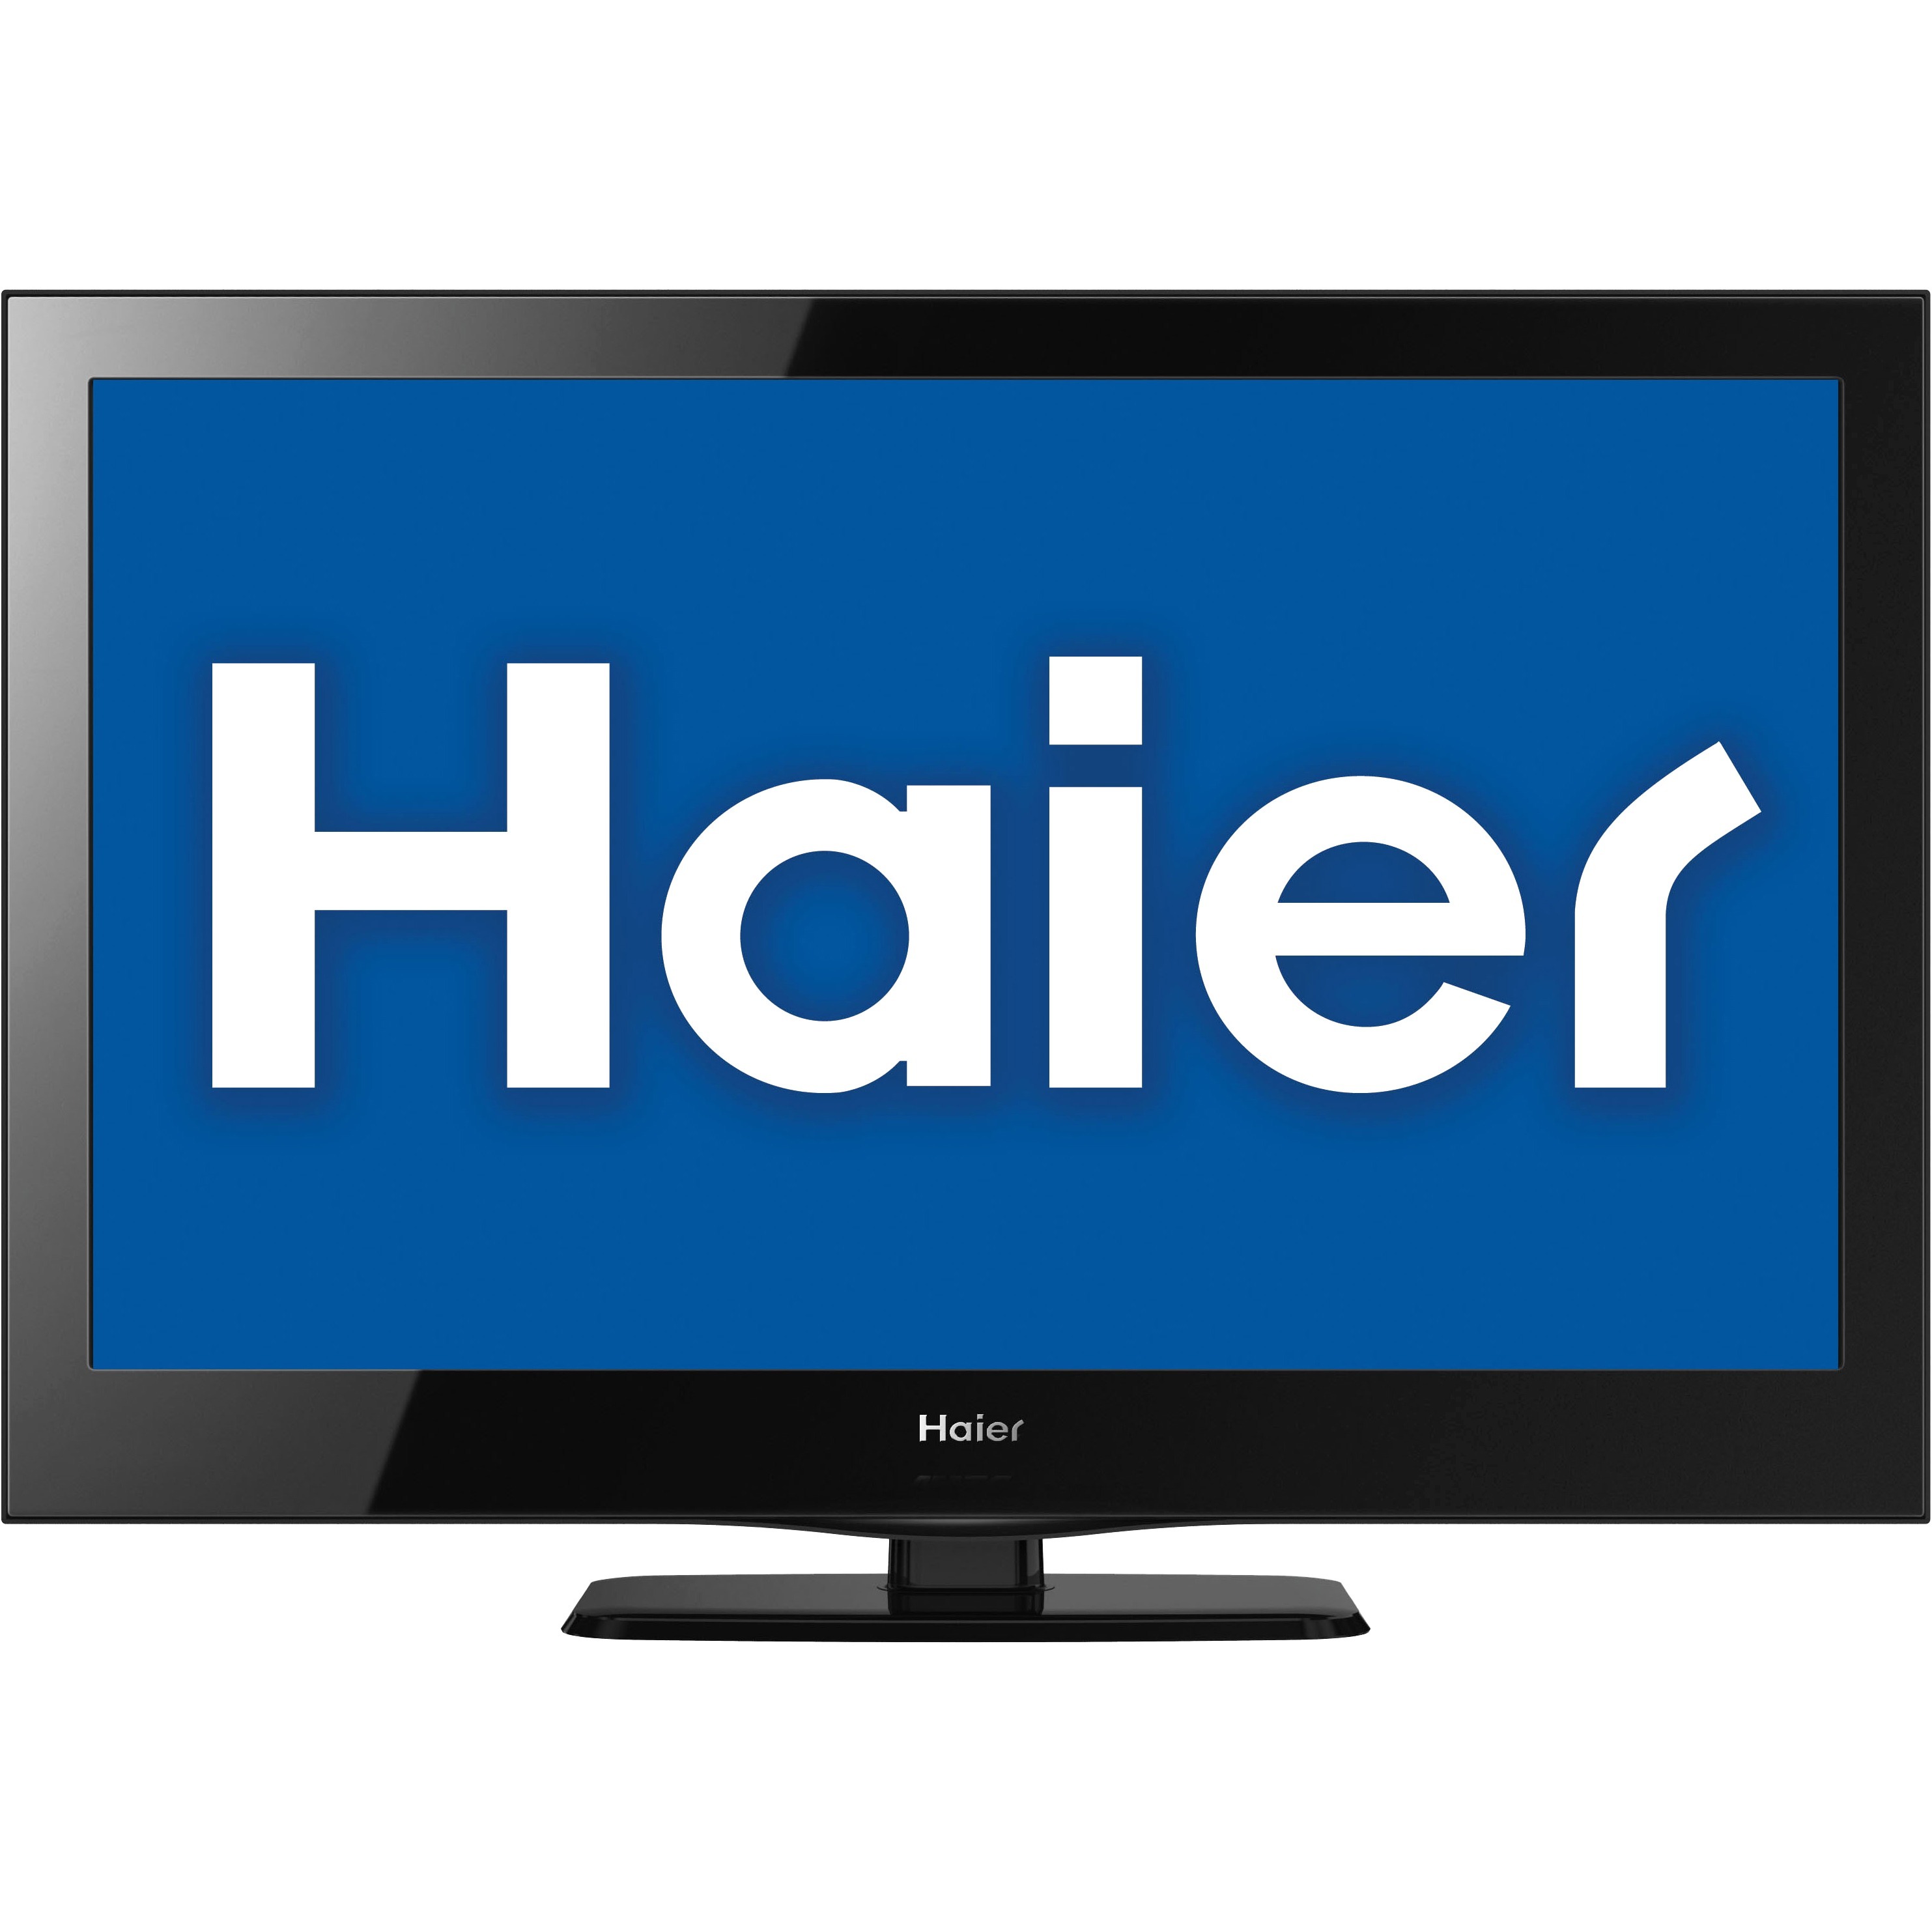 Haier 19" Class HDTV (720p) LED-LCD TV (LE19B13200)